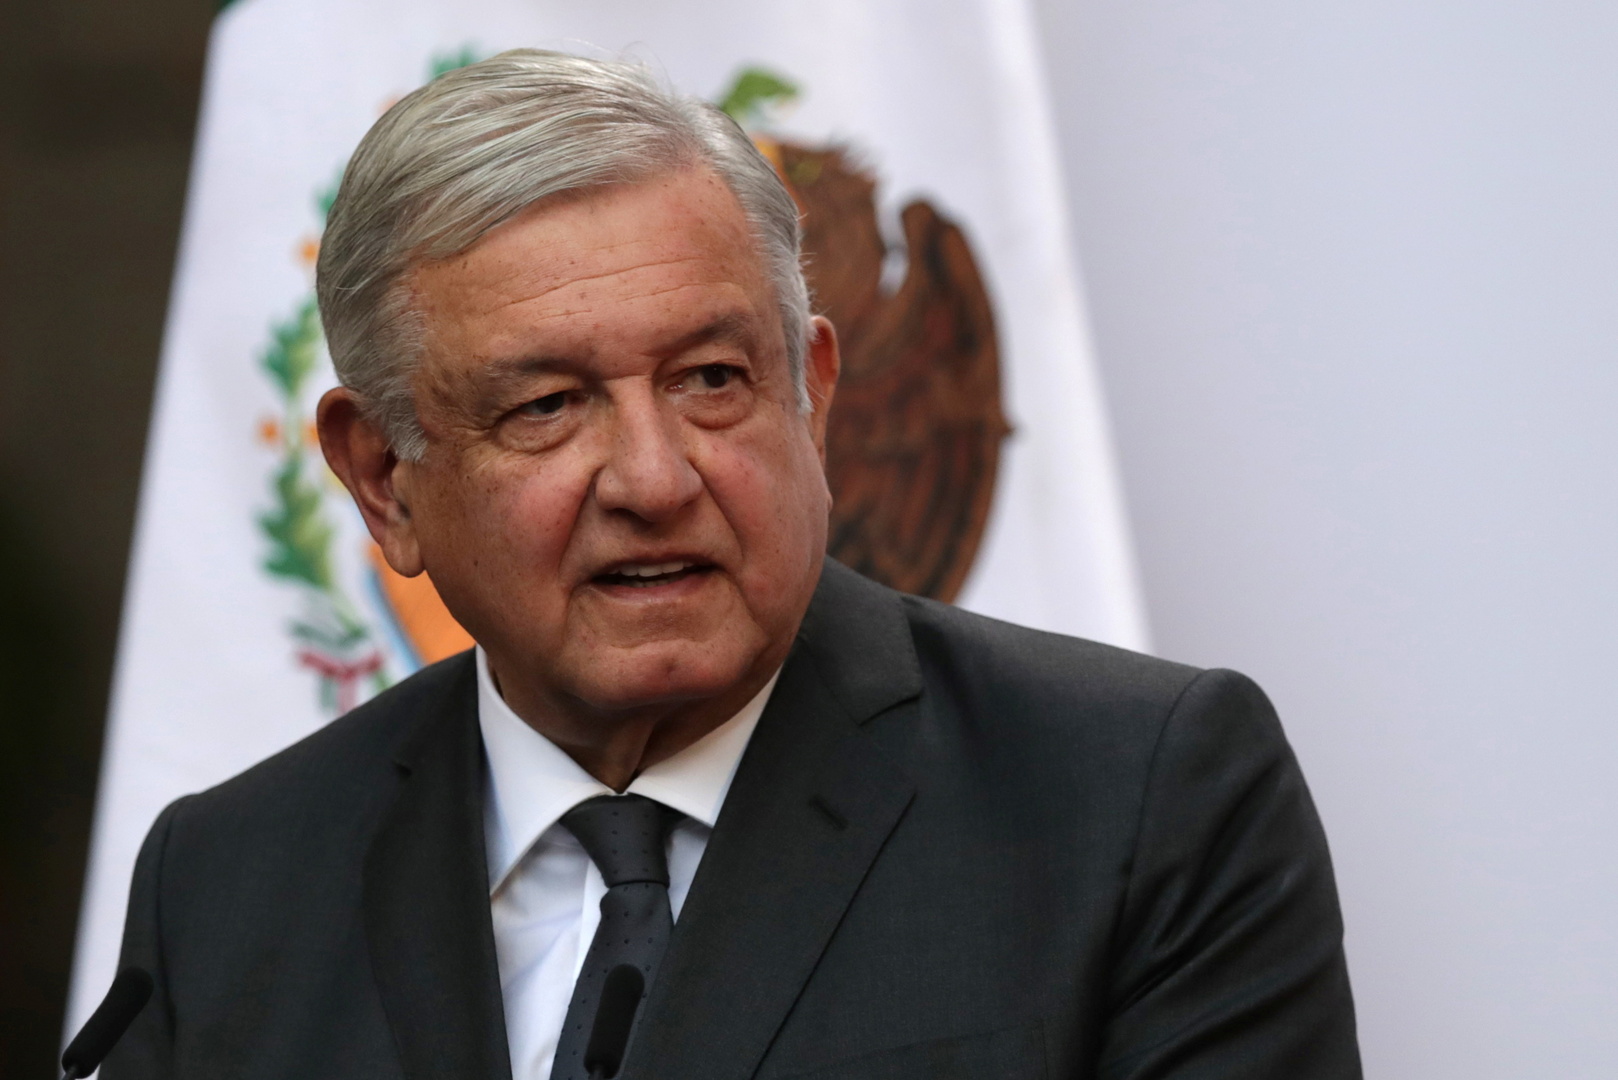 الرئيس المكسيكي يعلن إصابته بفيروس كورونا